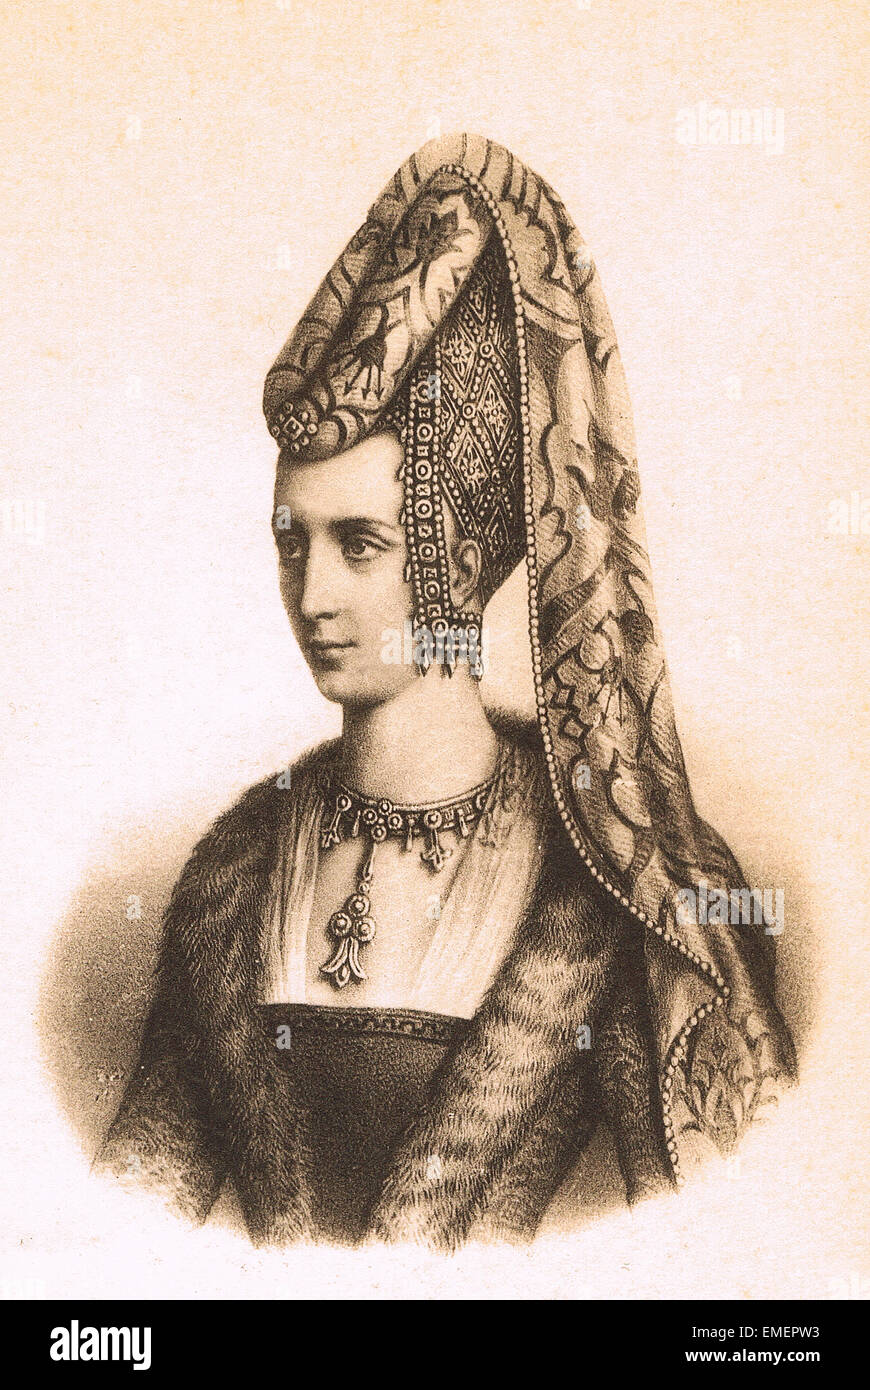 Isabeau de Bavière (aussi Elisabeth de Bavaria-Ingolstadt ; 1370 - 1435), Reine de France en épousant le roi Charles VI en 1385 Banque D'Images